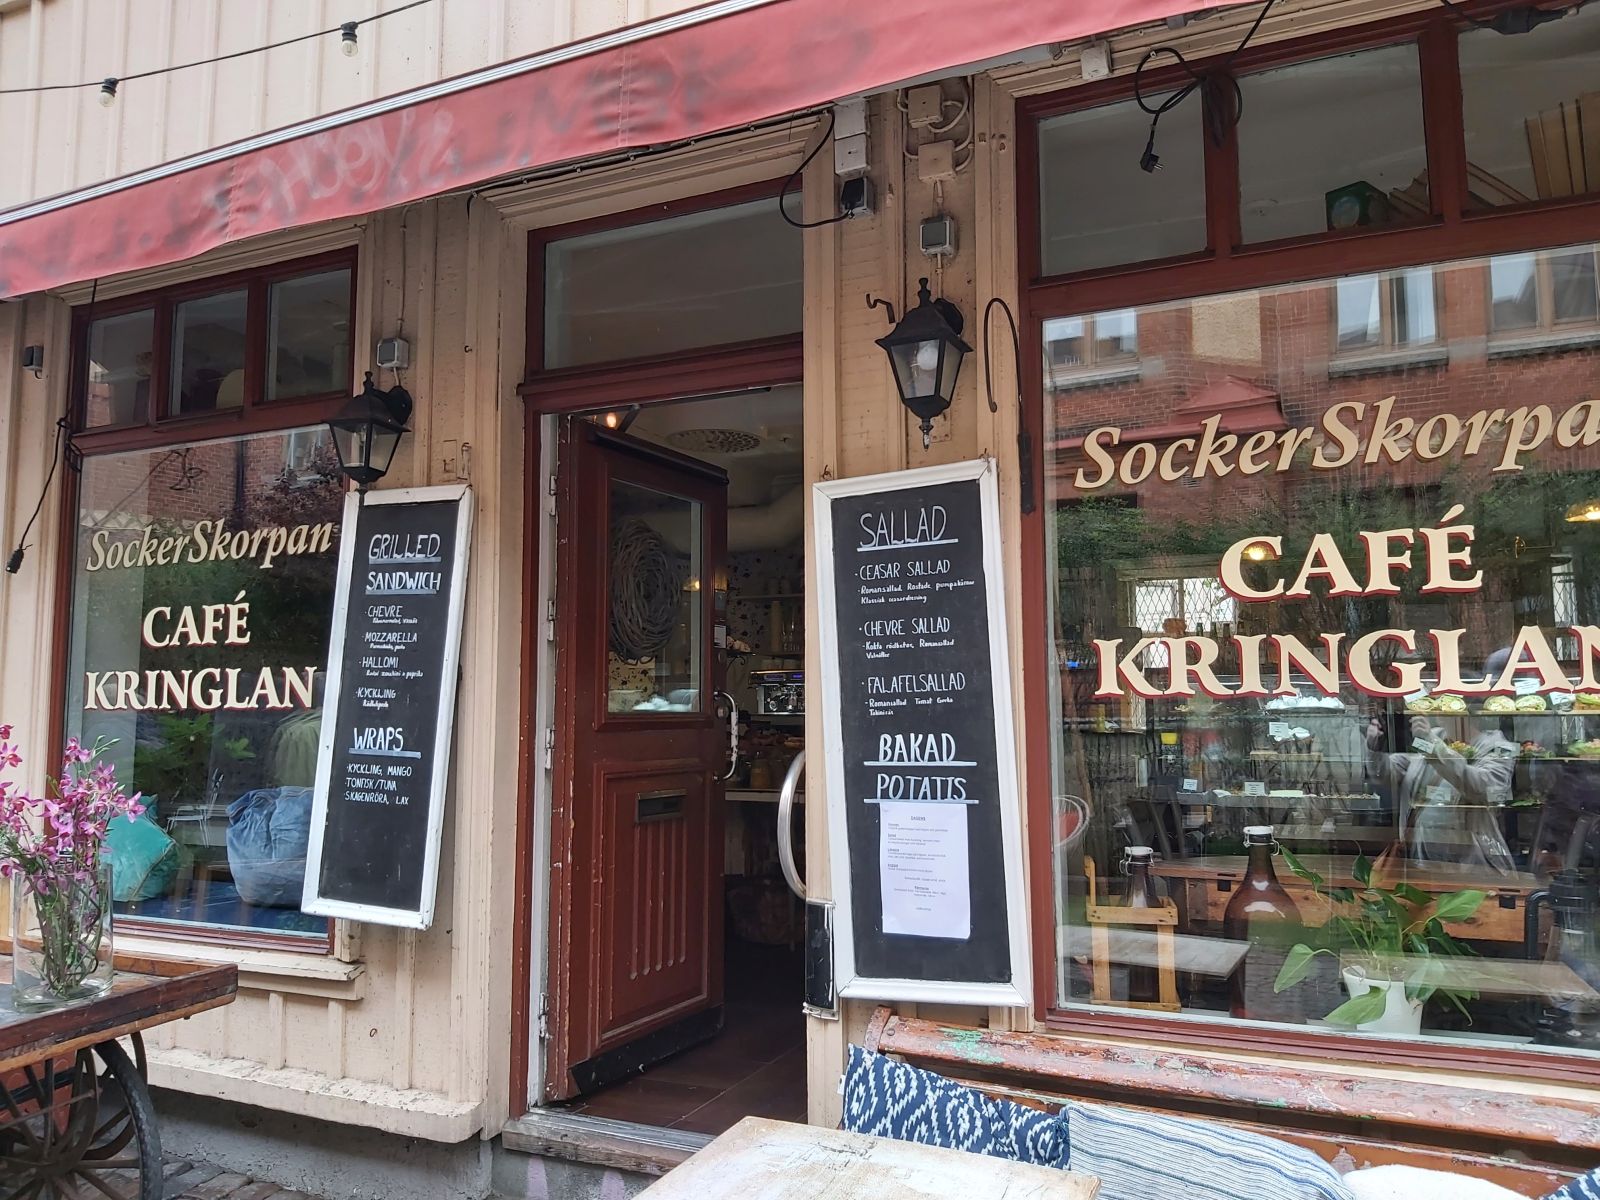 Schwedische Gemütlichkeit: Café Kringlan